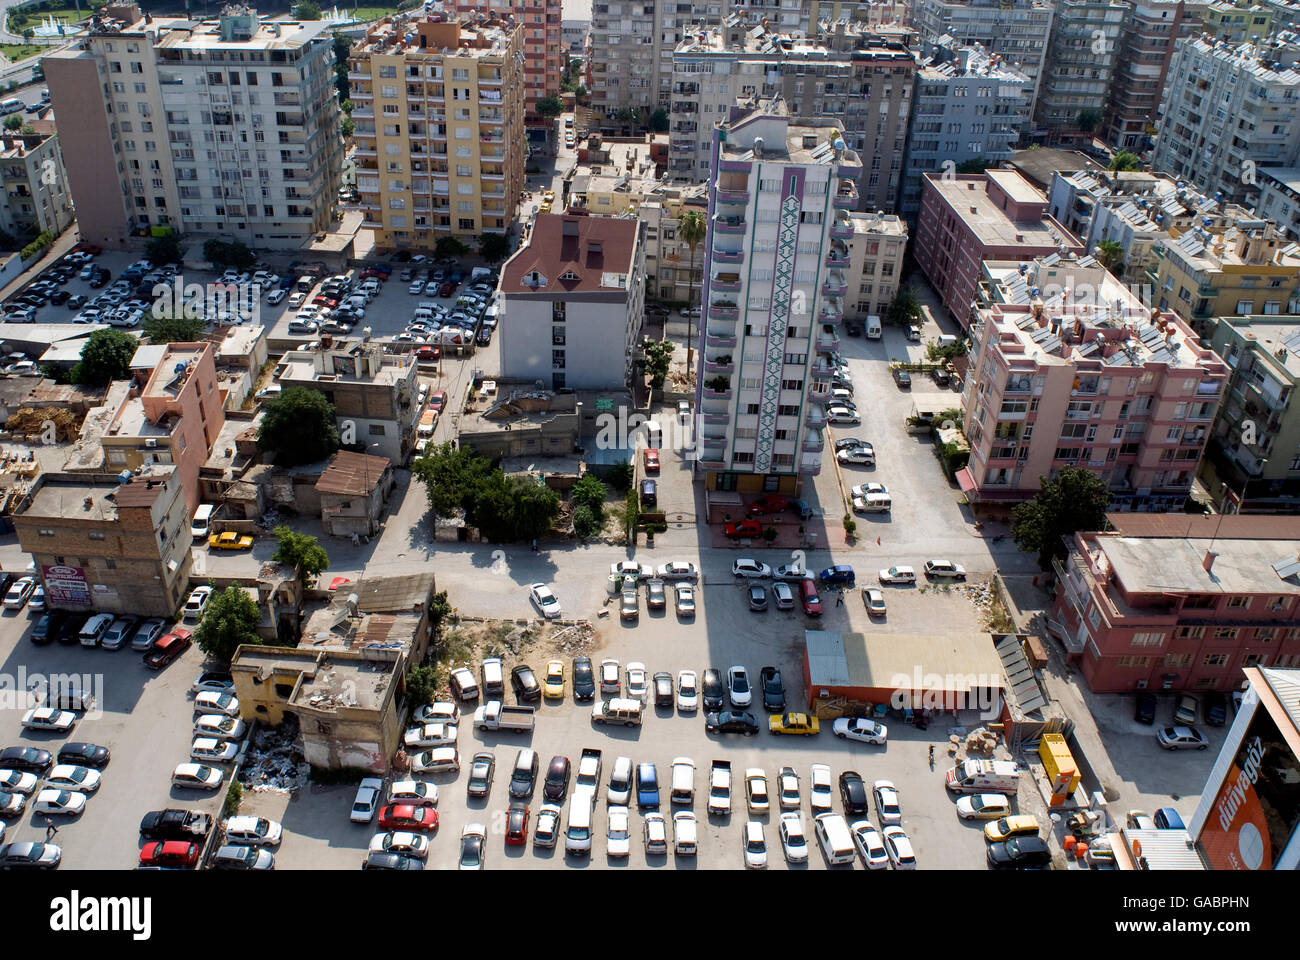 Die schnelle Urbanisierung und Autos bei Adana City. Adana ist die größte Stadt im Süden der Türkei und Mittelmeer-Region Stockfoto